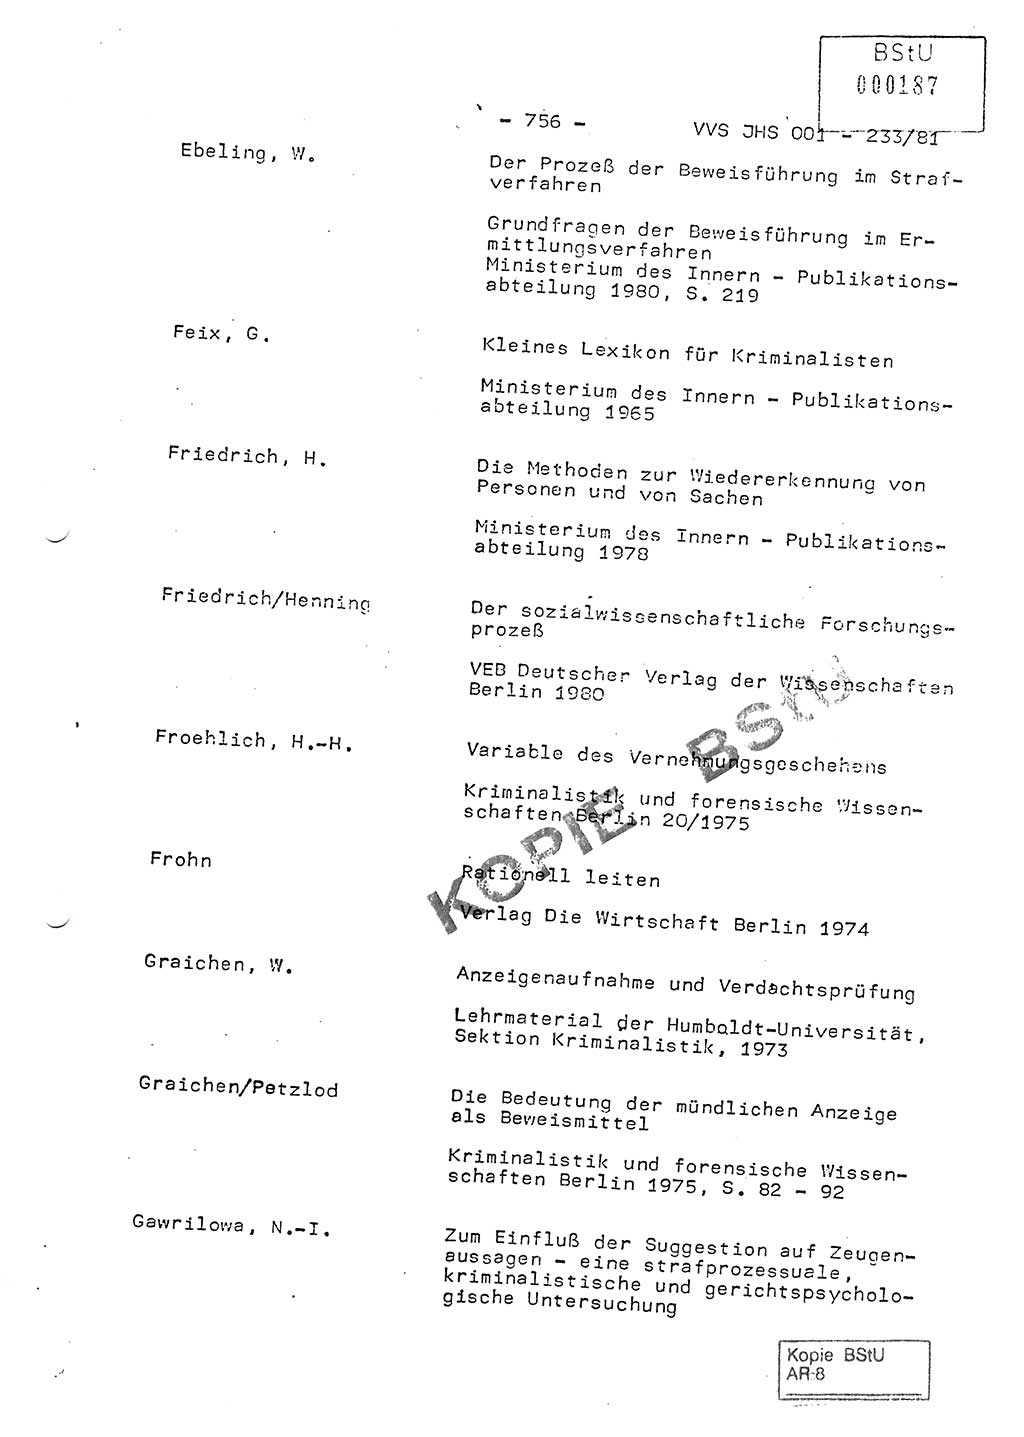 Dissertation Oberstleutnant Horst Zank (JHS), Oberstleutnant Dr. Karl-Heinz Knoblauch (JHS), Oberstleutnant Gustav-Adolf Kowalewski (HA Ⅸ), Oberstleutnant Wolfgang Plötner (HA Ⅸ), Ministerium für Staatssicherheit (MfS) [Deutsche Demokratische Republik (DDR)], Juristische Hochschule (JHS), Vertrauliche Verschlußsache (VVS) o001-233/81, Potsdam 1981, Blatt 756 (Diss. MfS DDR JHS VVS o001-233/81 1981, Bl. 756)